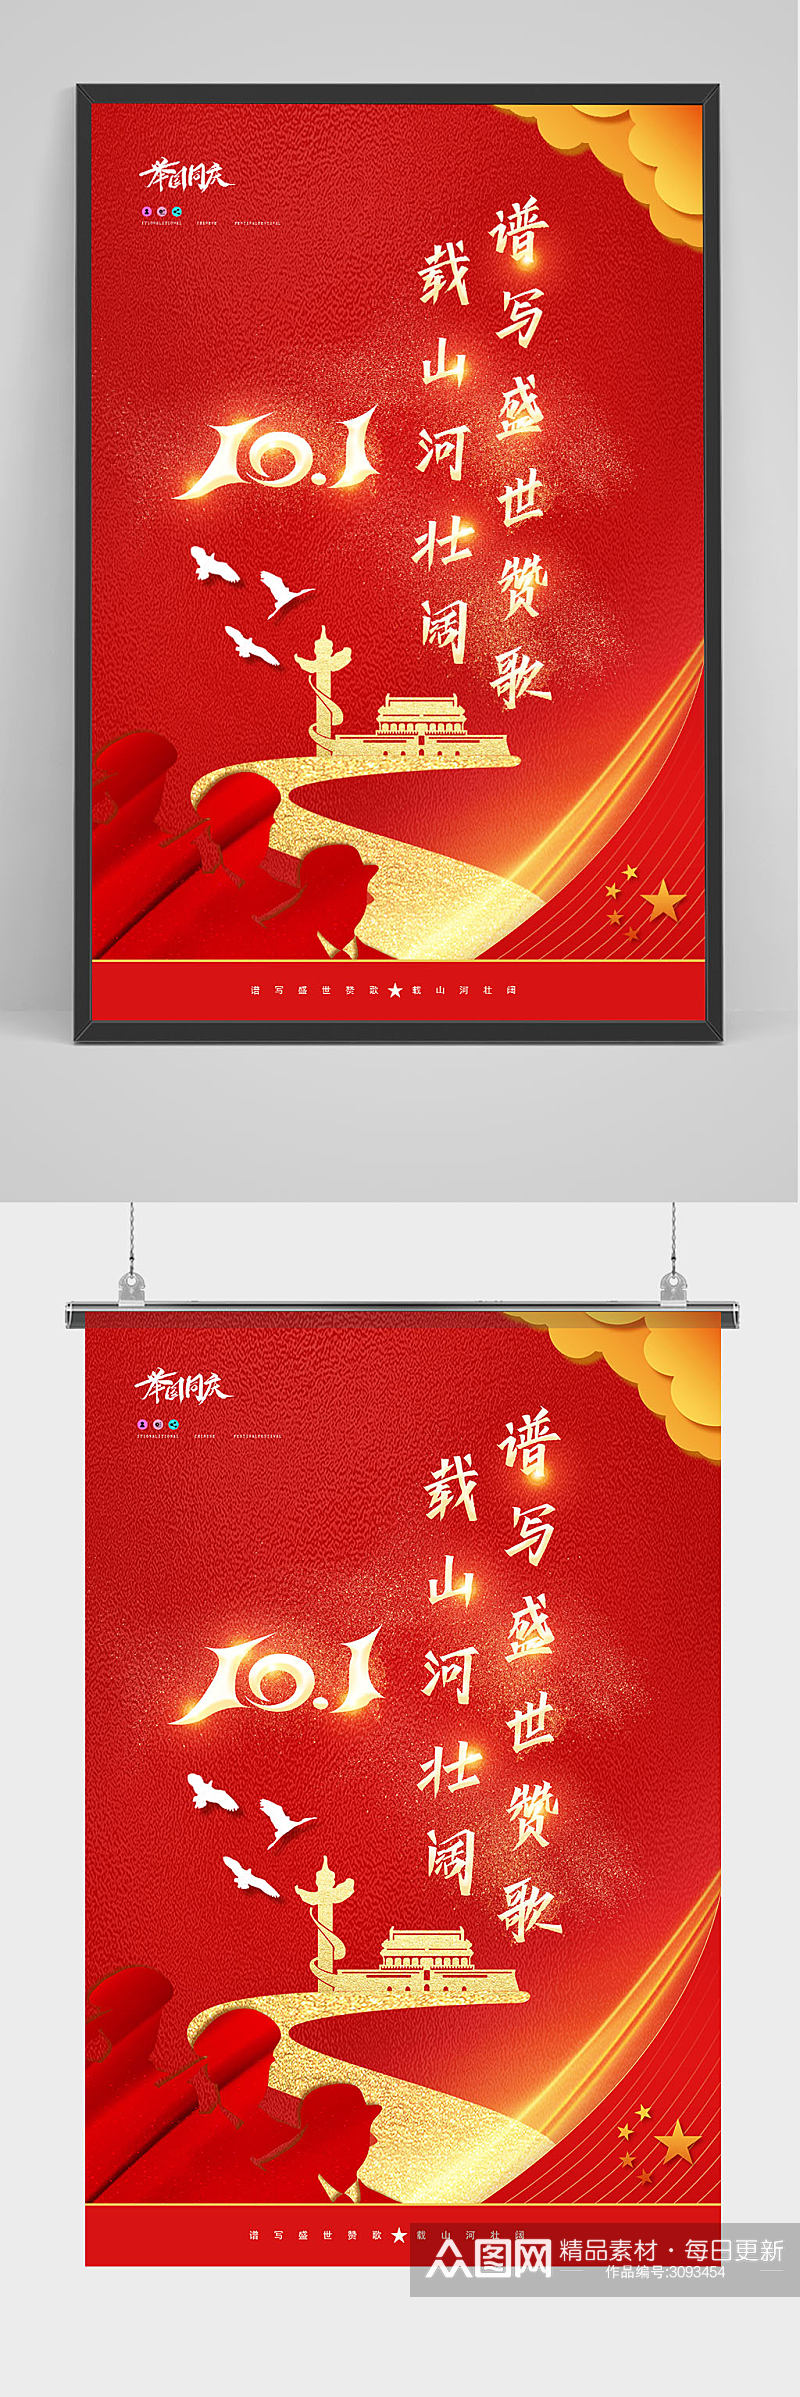 红色大气国庆节宣传海报素材